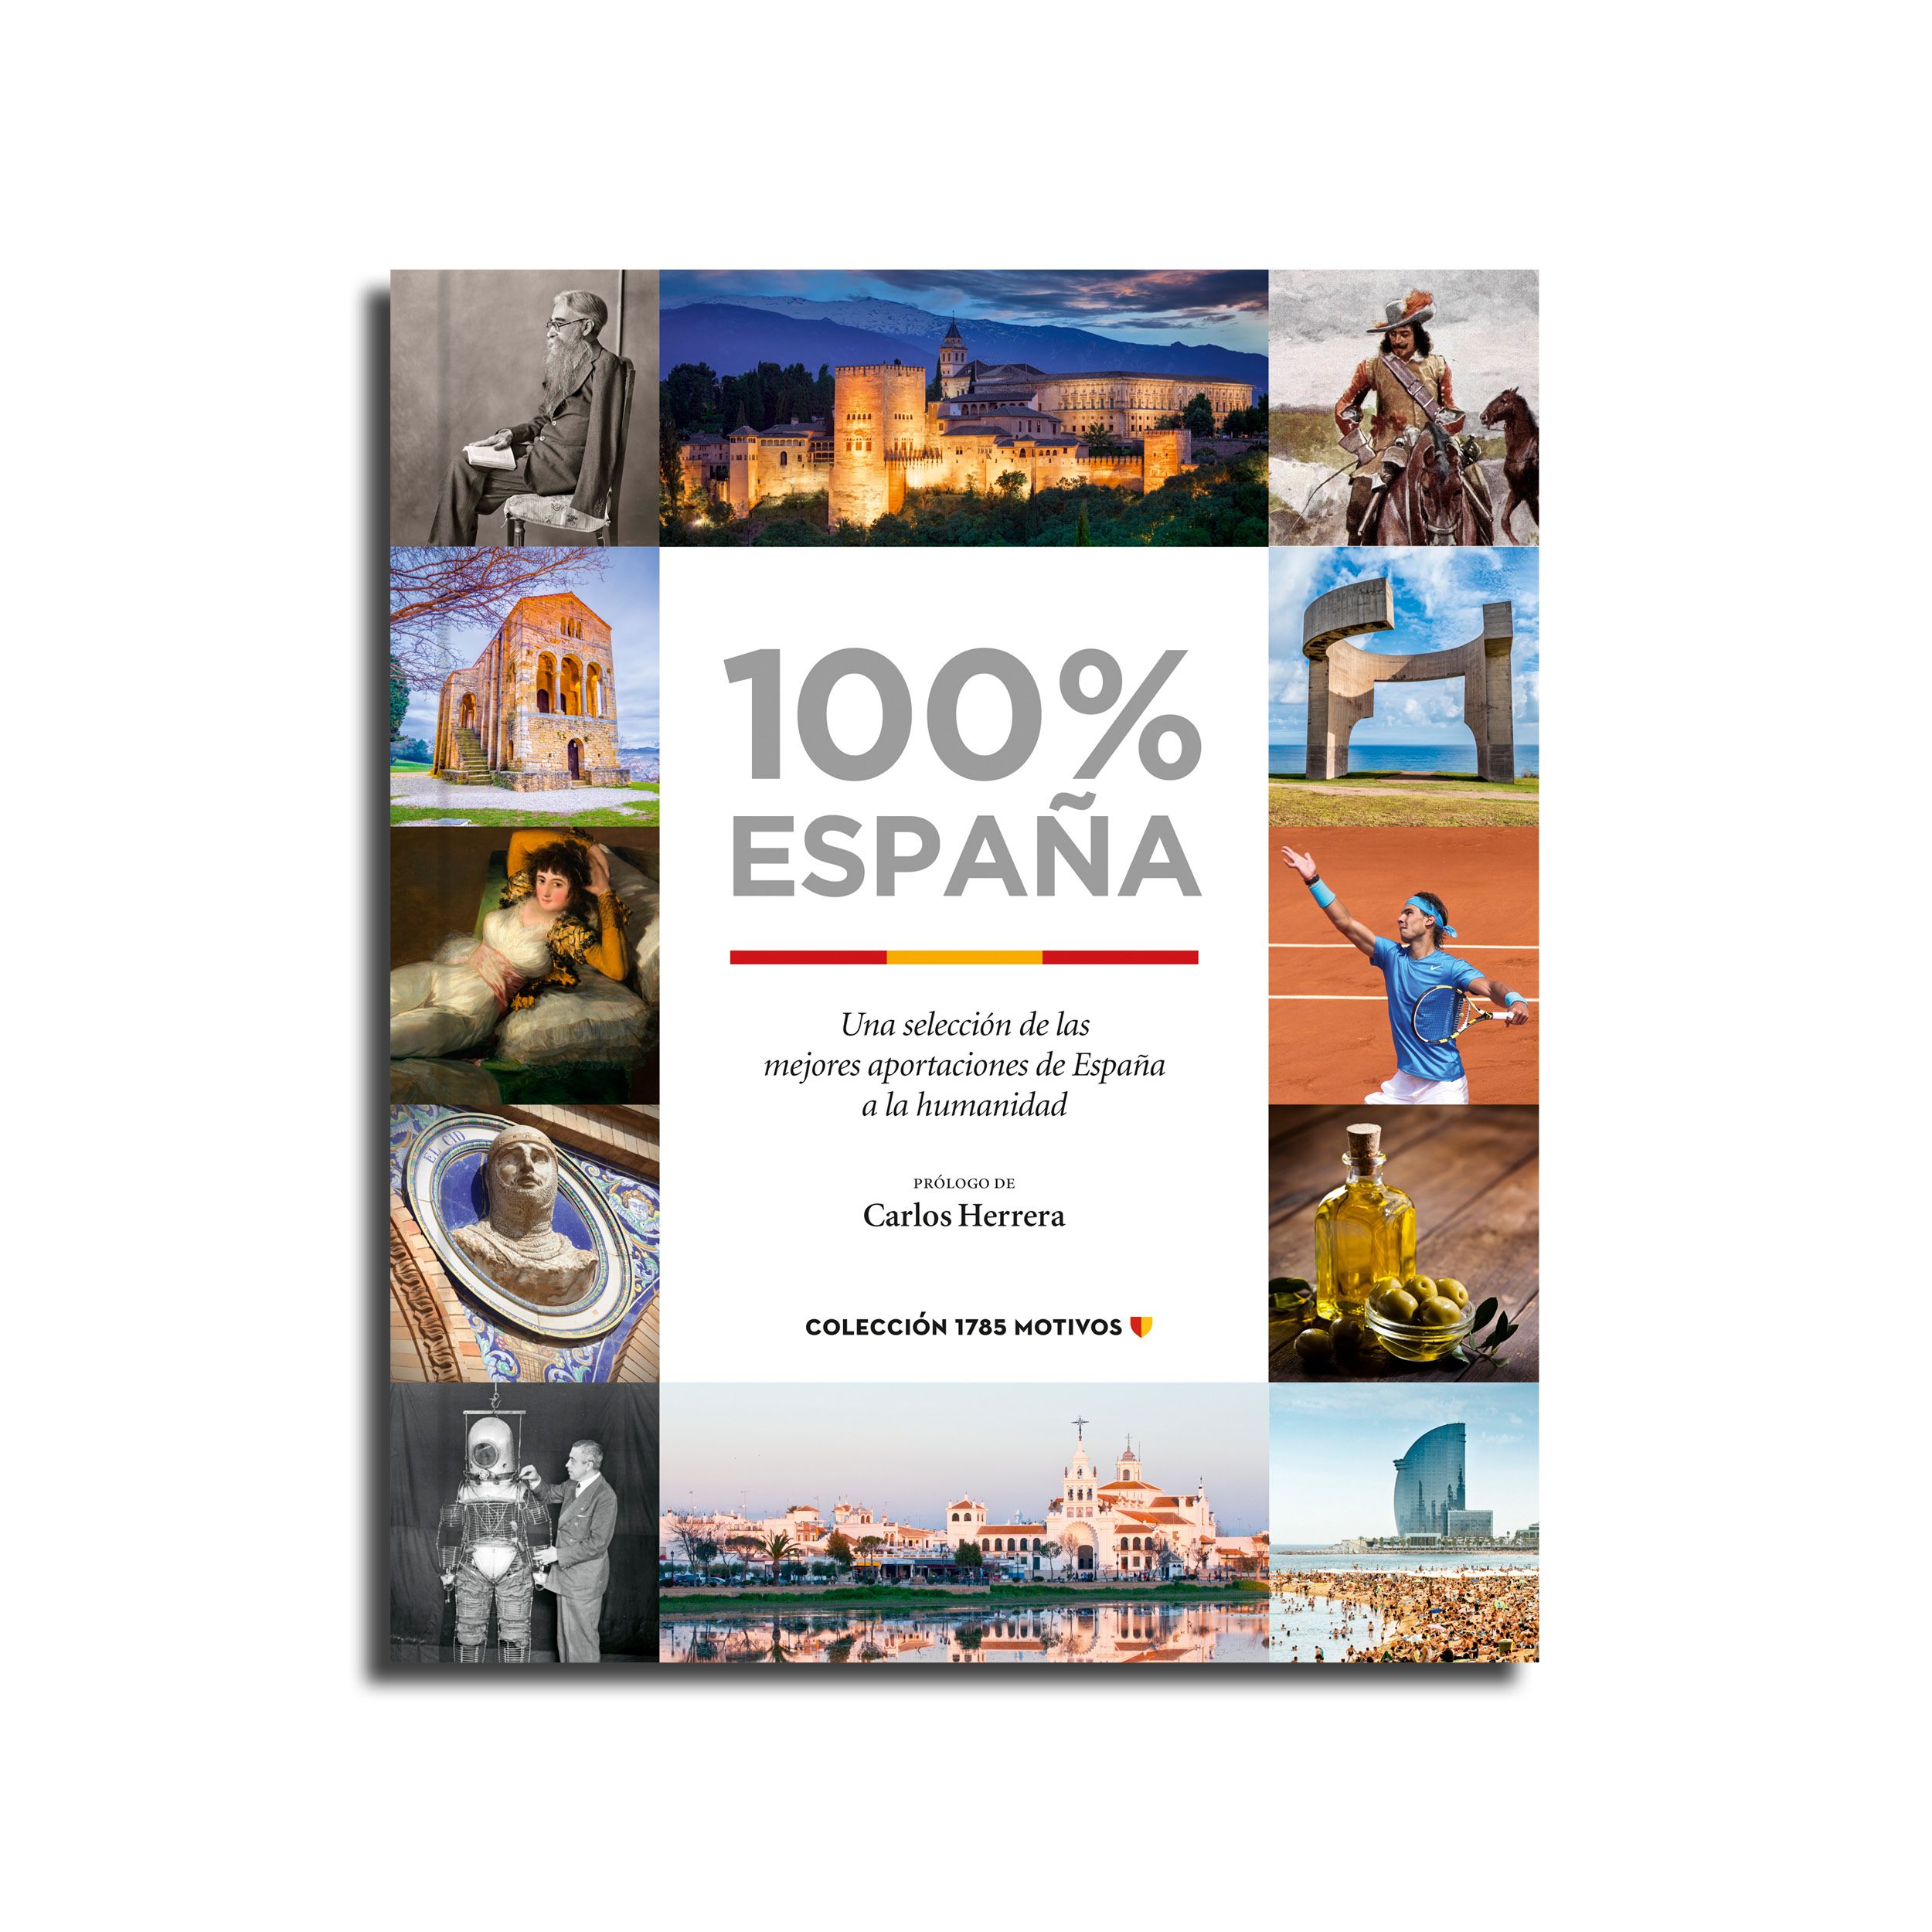 '100% España': El libro que ilustra las mejores aportaciones del país a la humanidad